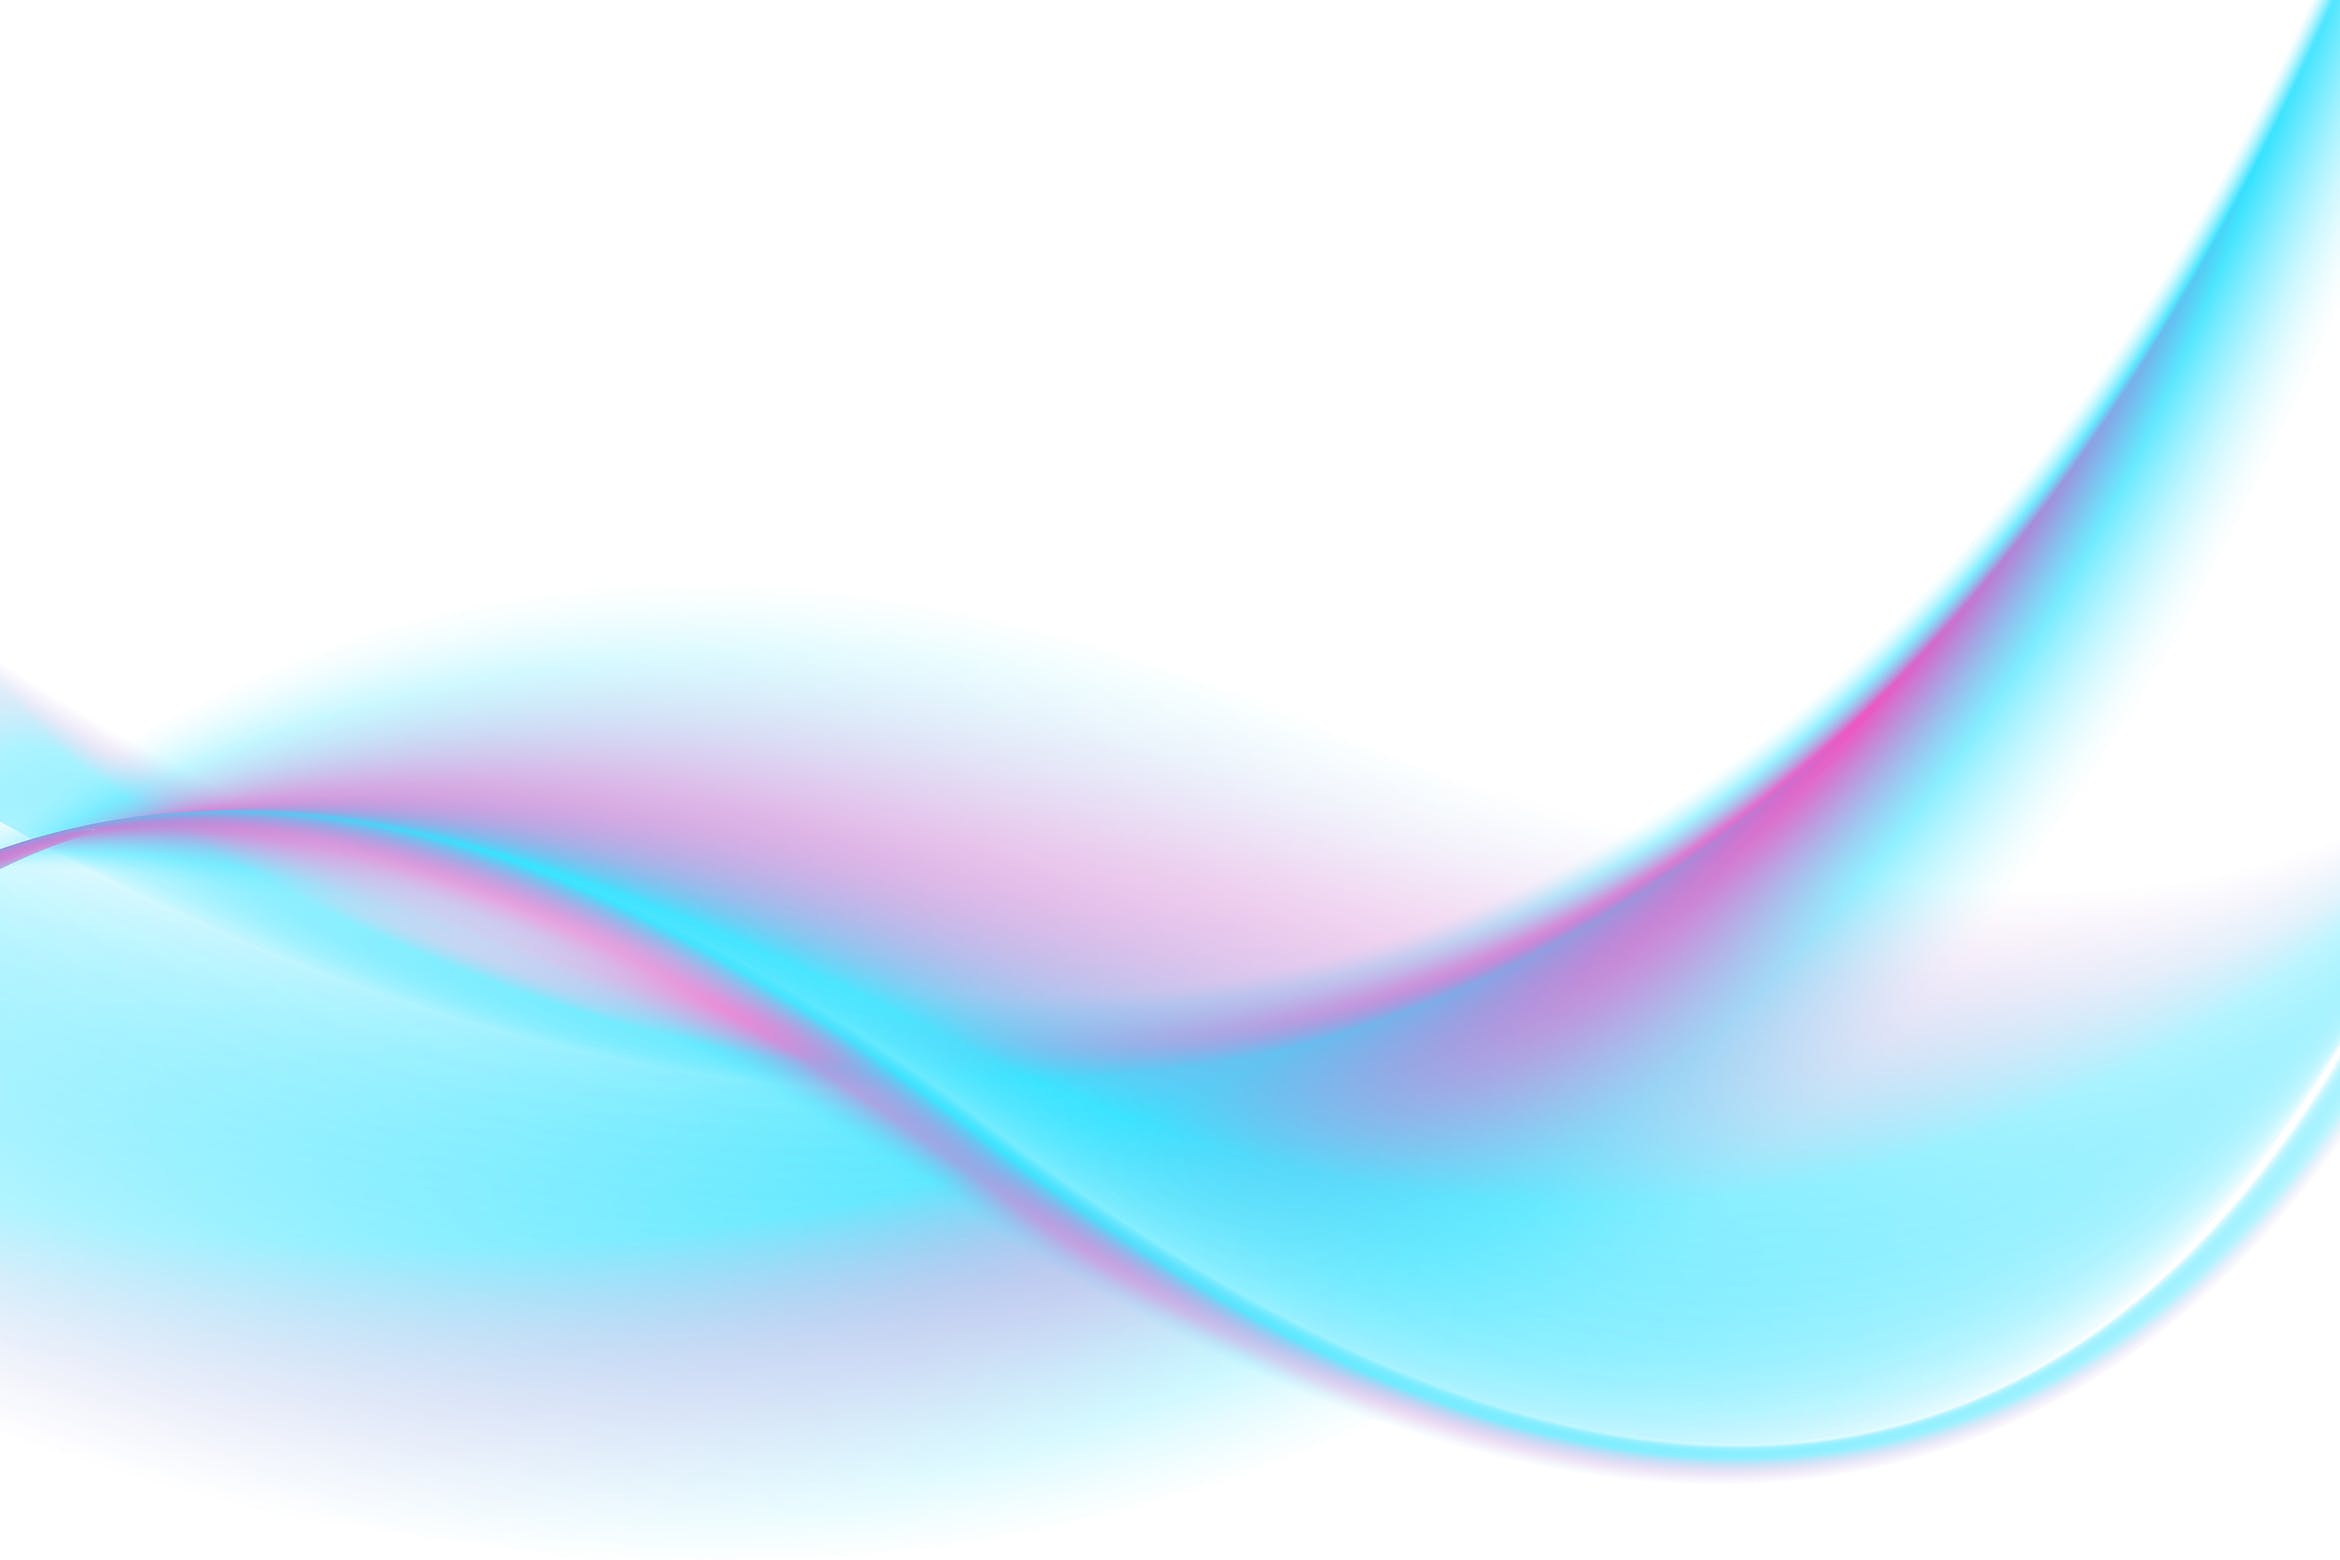 抽象平滑流动波纹背景图素材abstract Smooth Flowing Waves Background 大洋岛素材